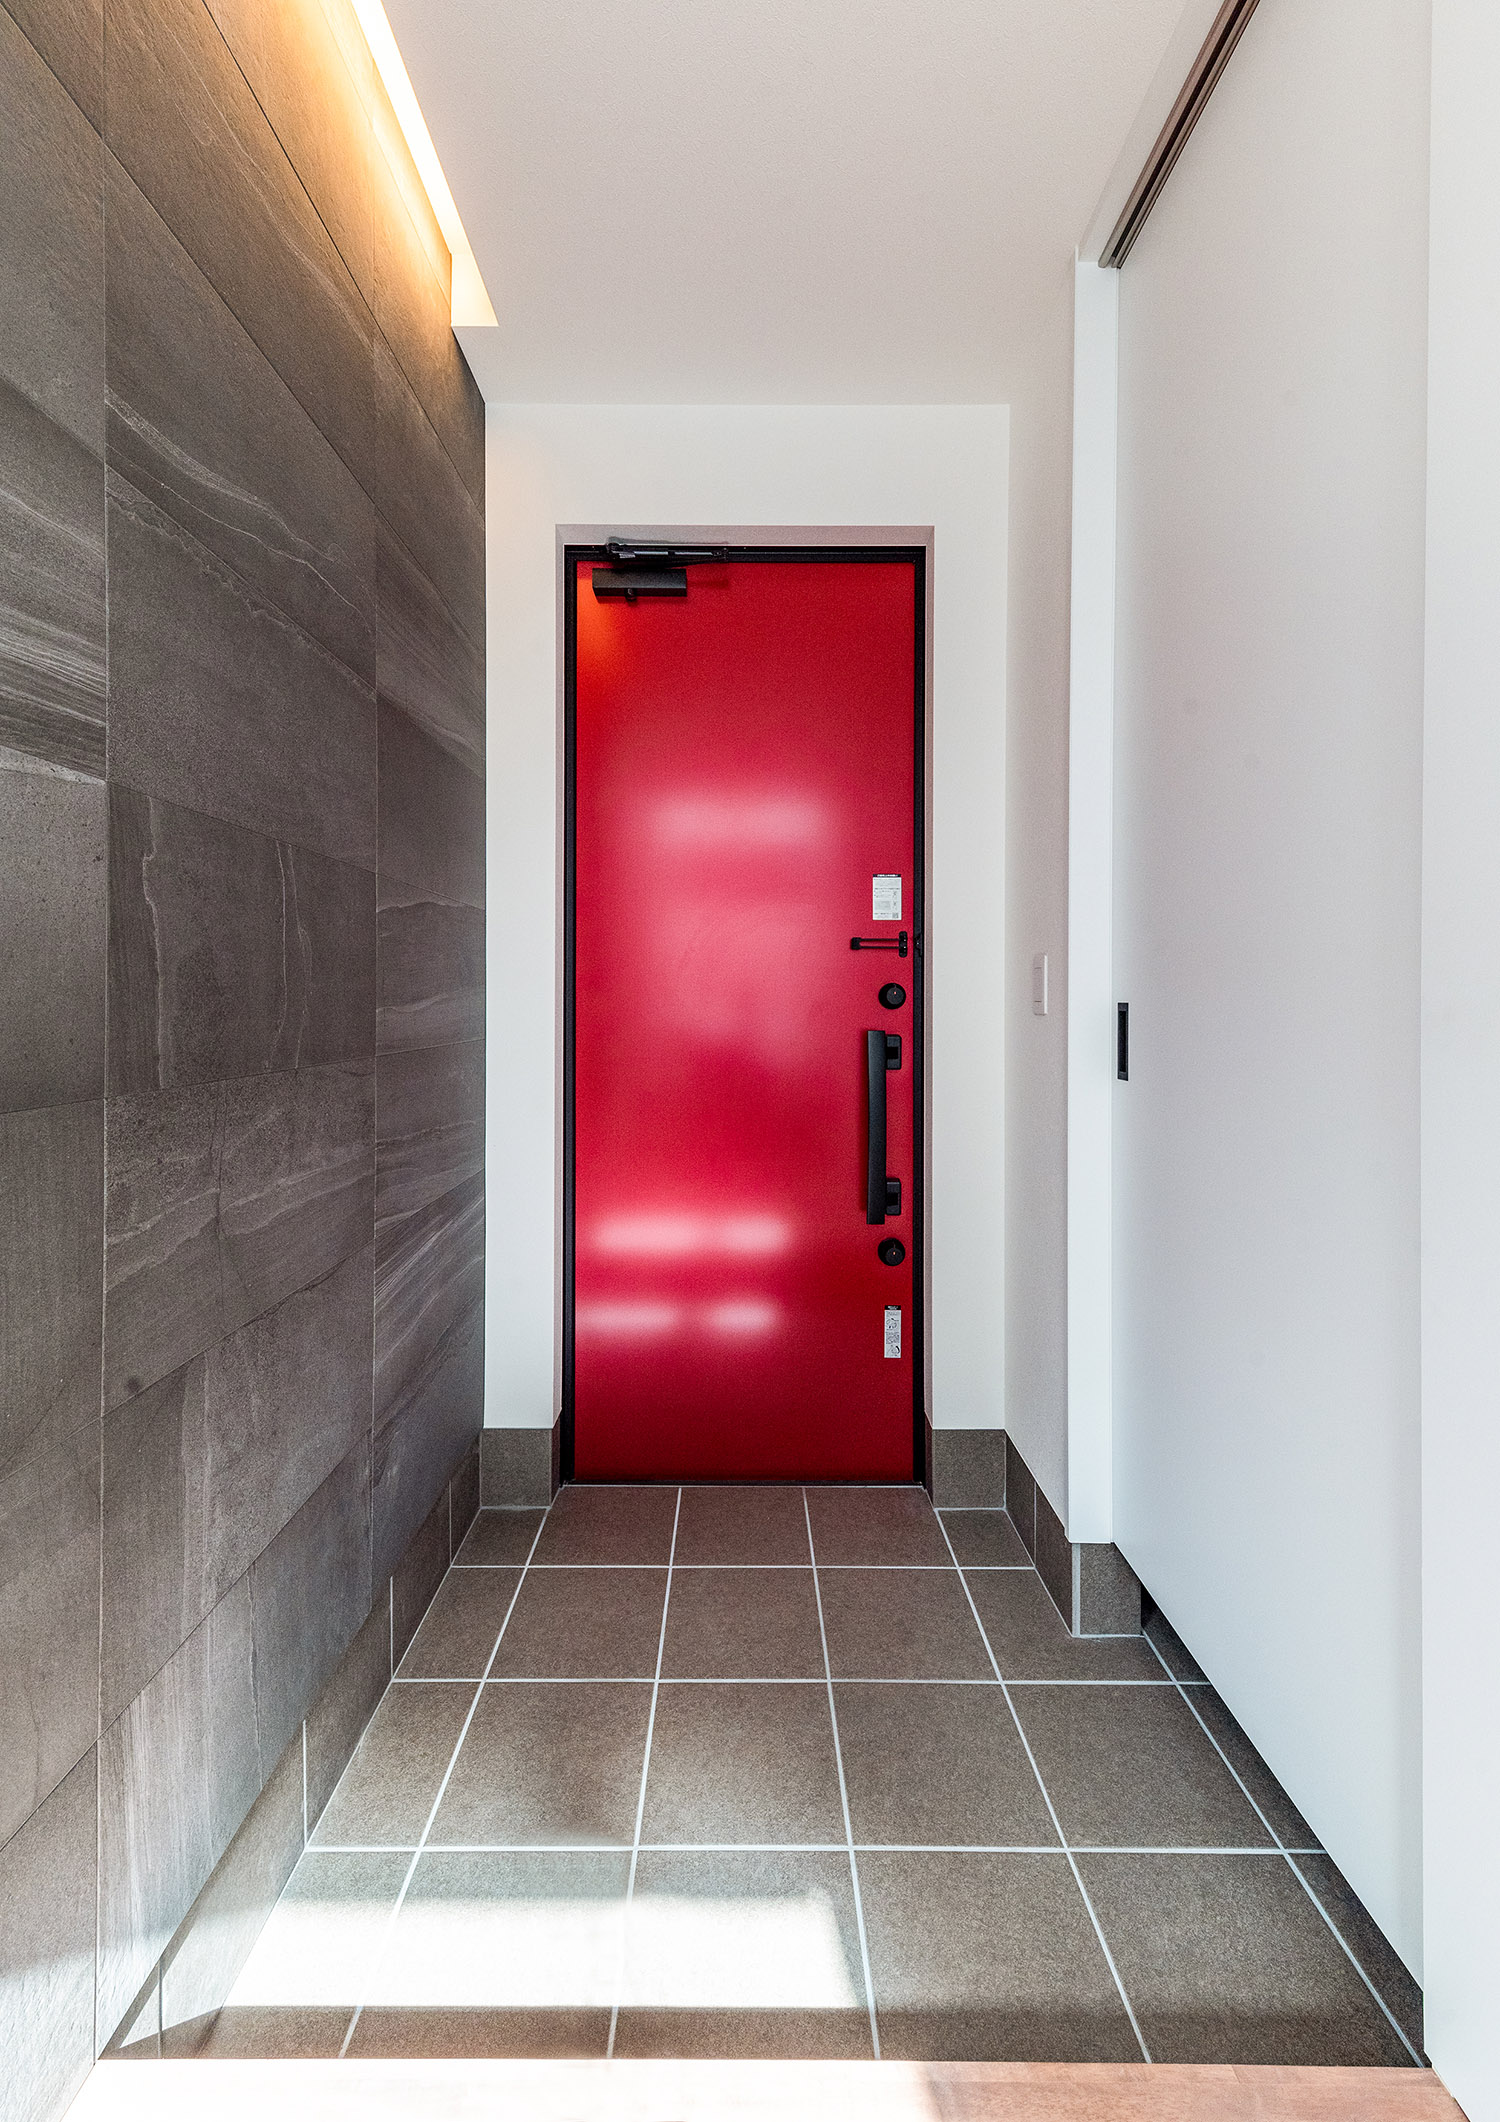 グレーの床と壁の玄関で赤い扉がアクセントになった玄関・デザイン住宅